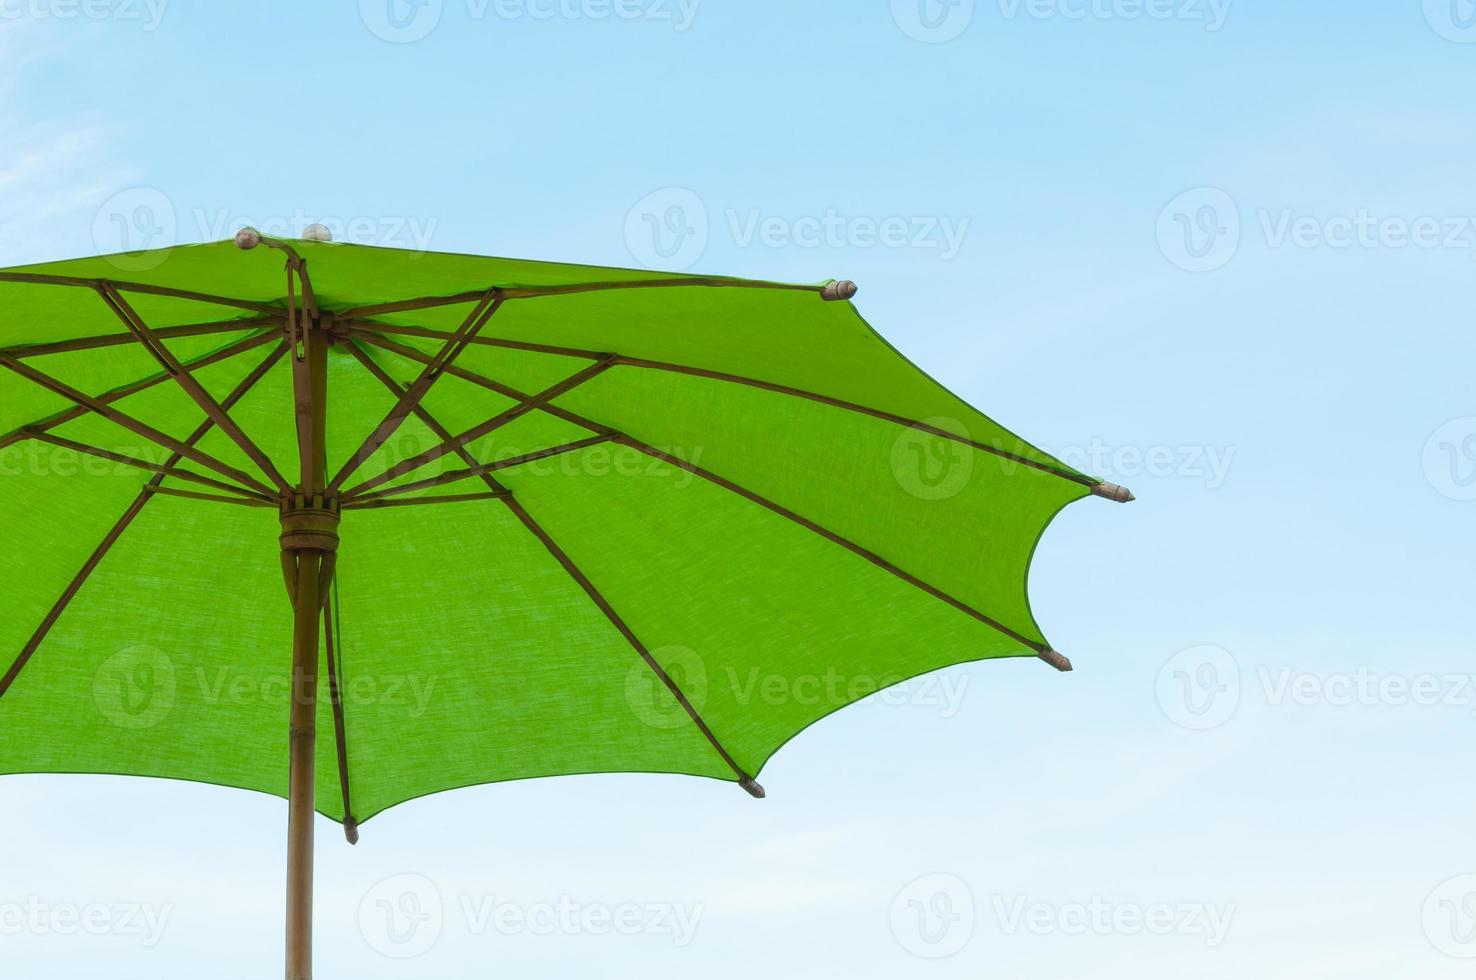 traditionnel asiatique papier et bamoo parapluie avec une arrondi manipuler sur ciel bleu photo